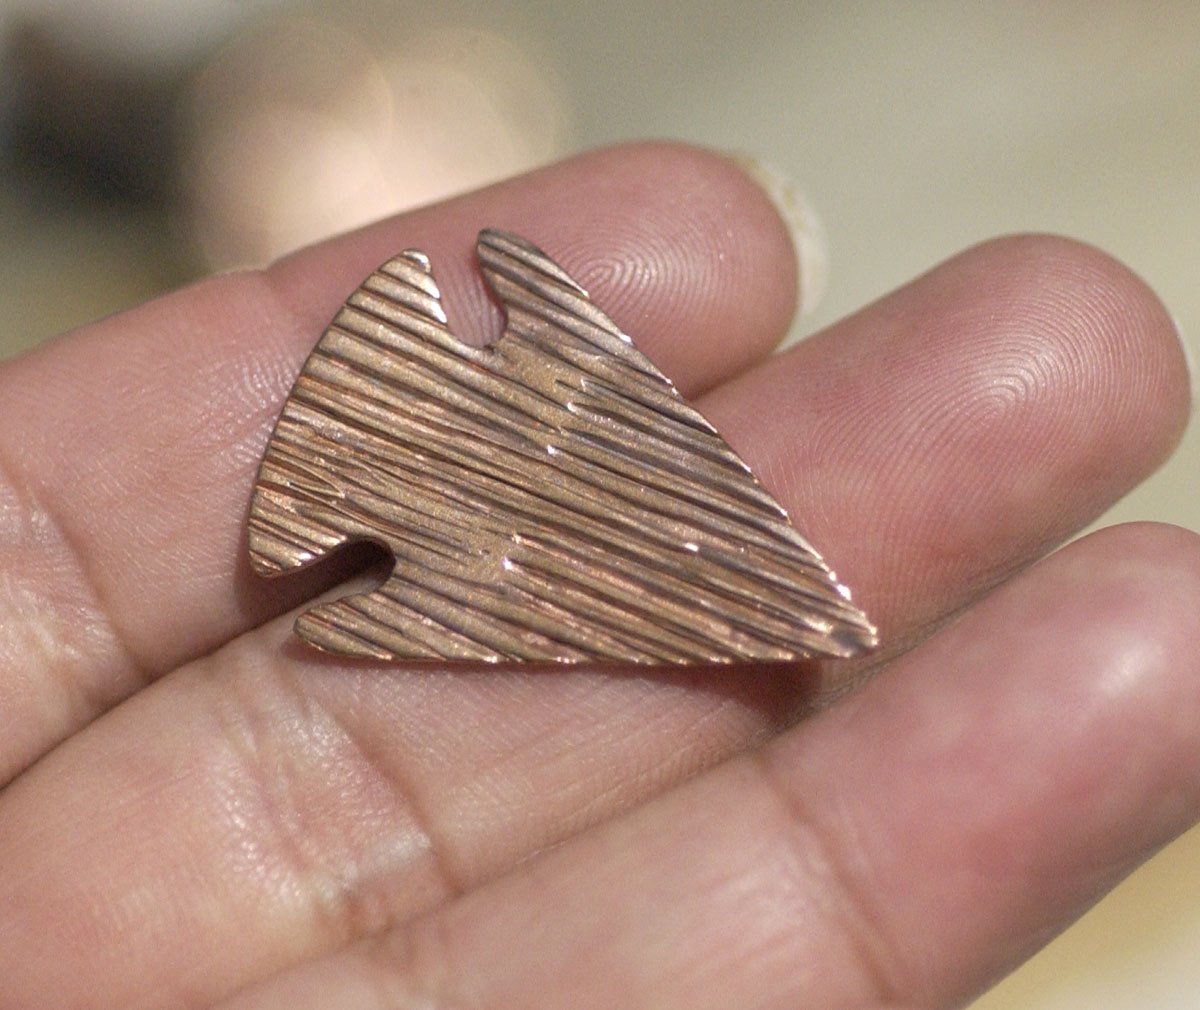 Woodgrain Pattern Arrowhead Blanks Cutout Shape for Enameling Metalworking Soldering Blank Variety of Metals